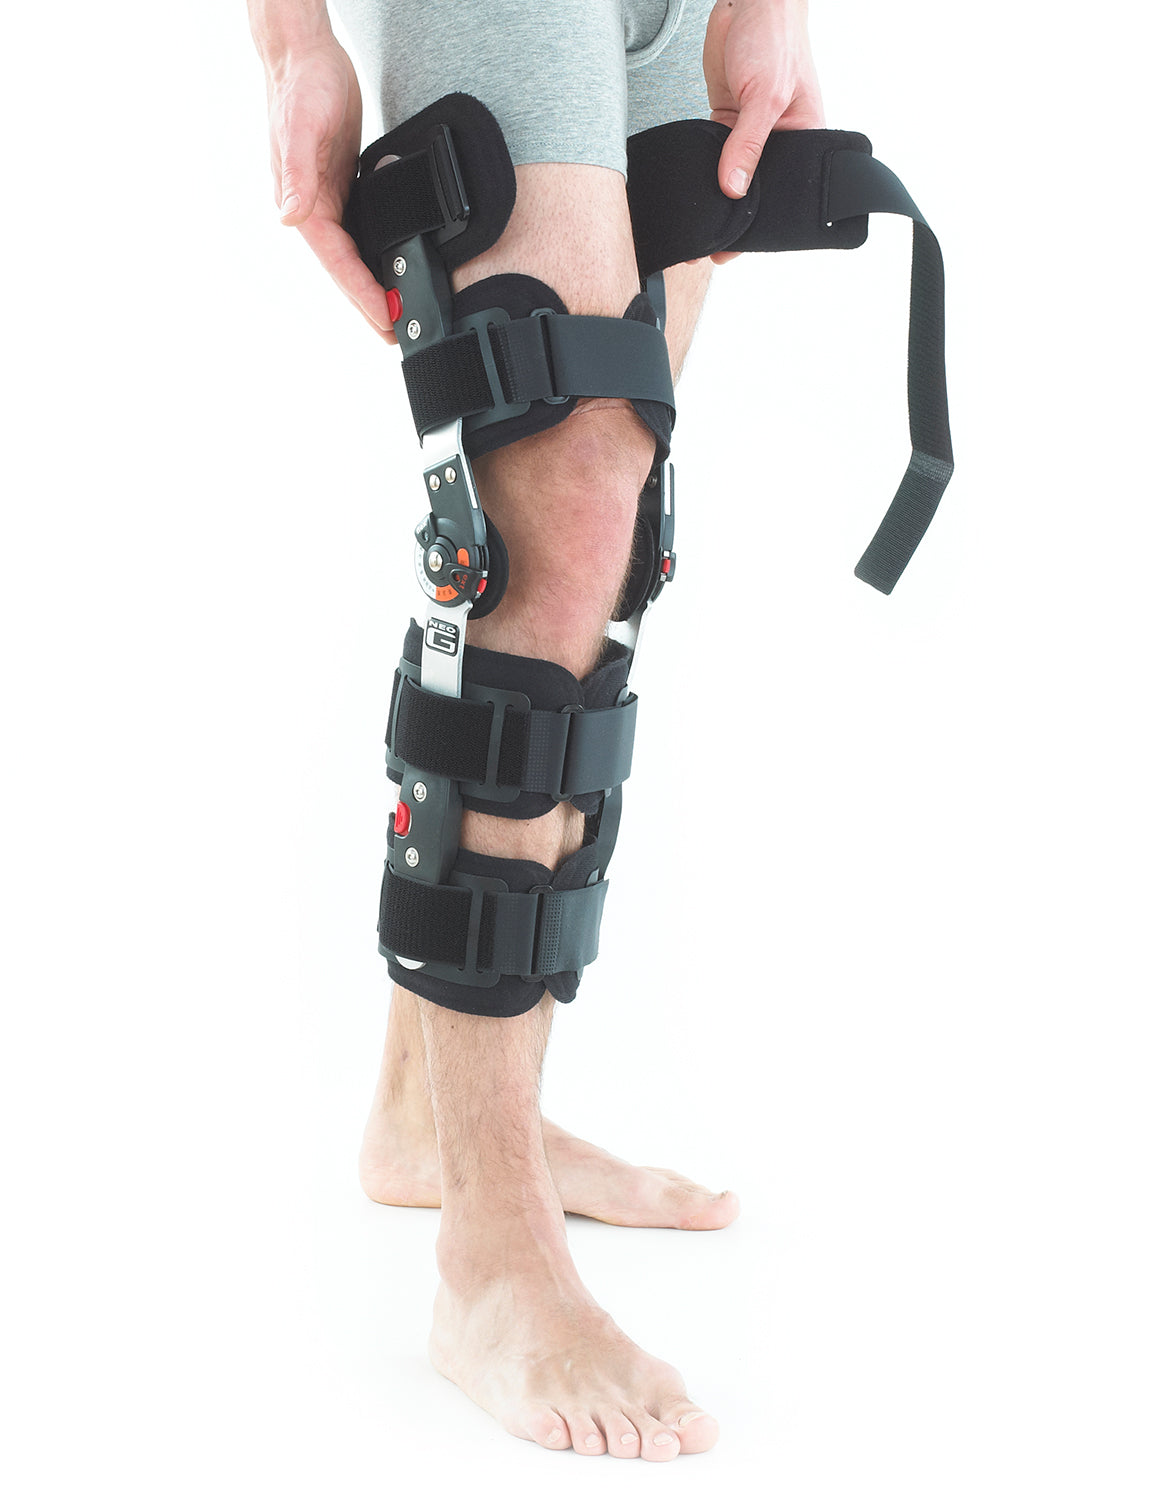 Post Operative Knee Brace